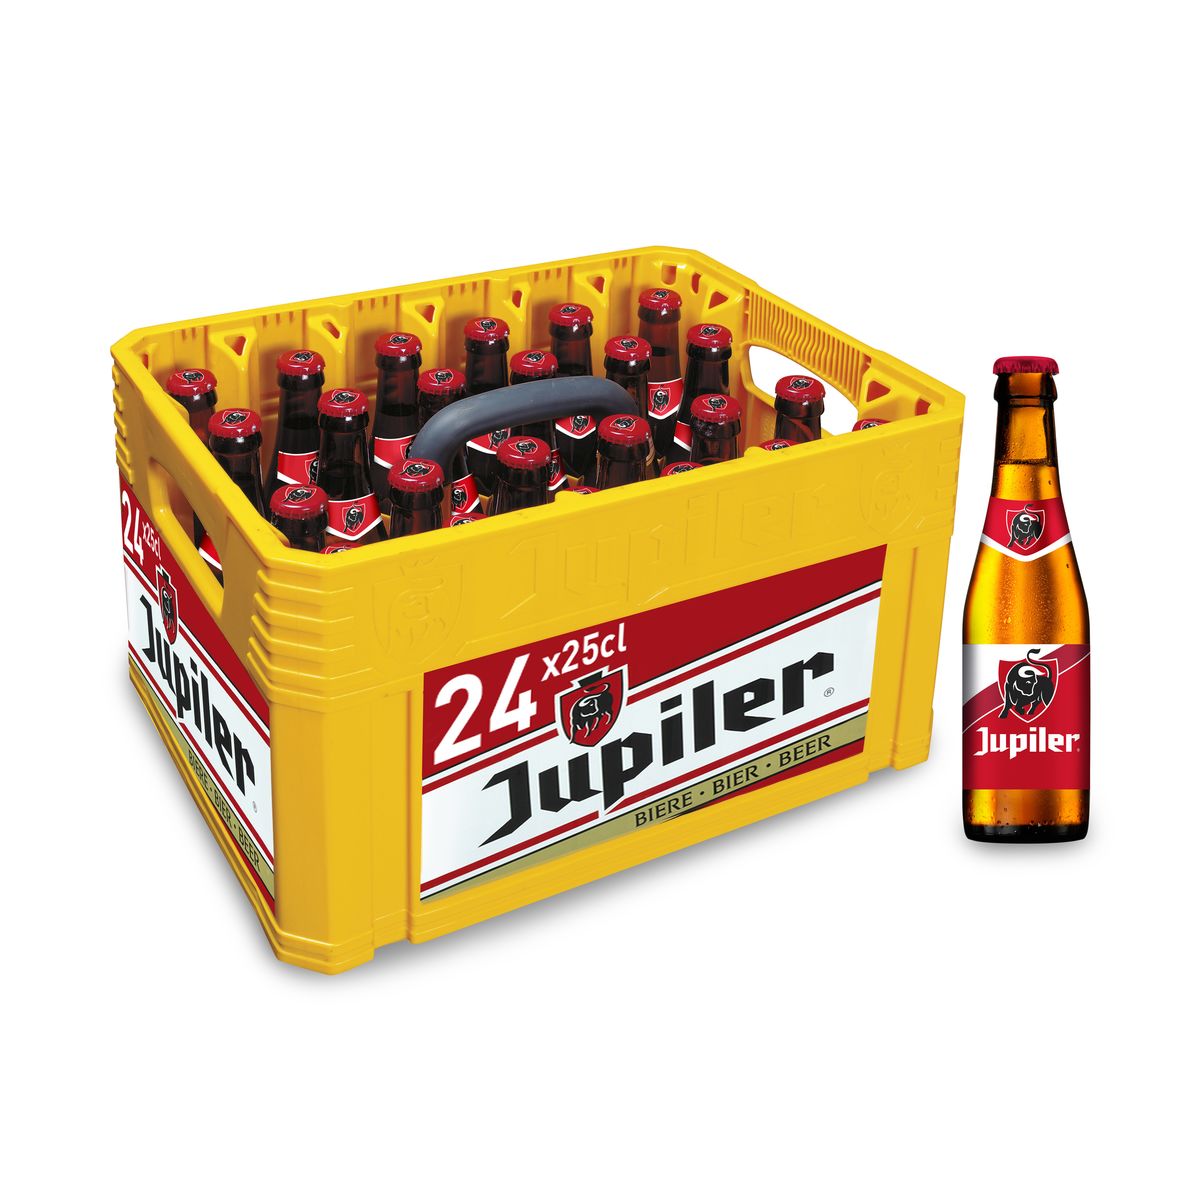 Jupiler Blond Bier Pils 5.2% Alc 24 x 25 cl bak